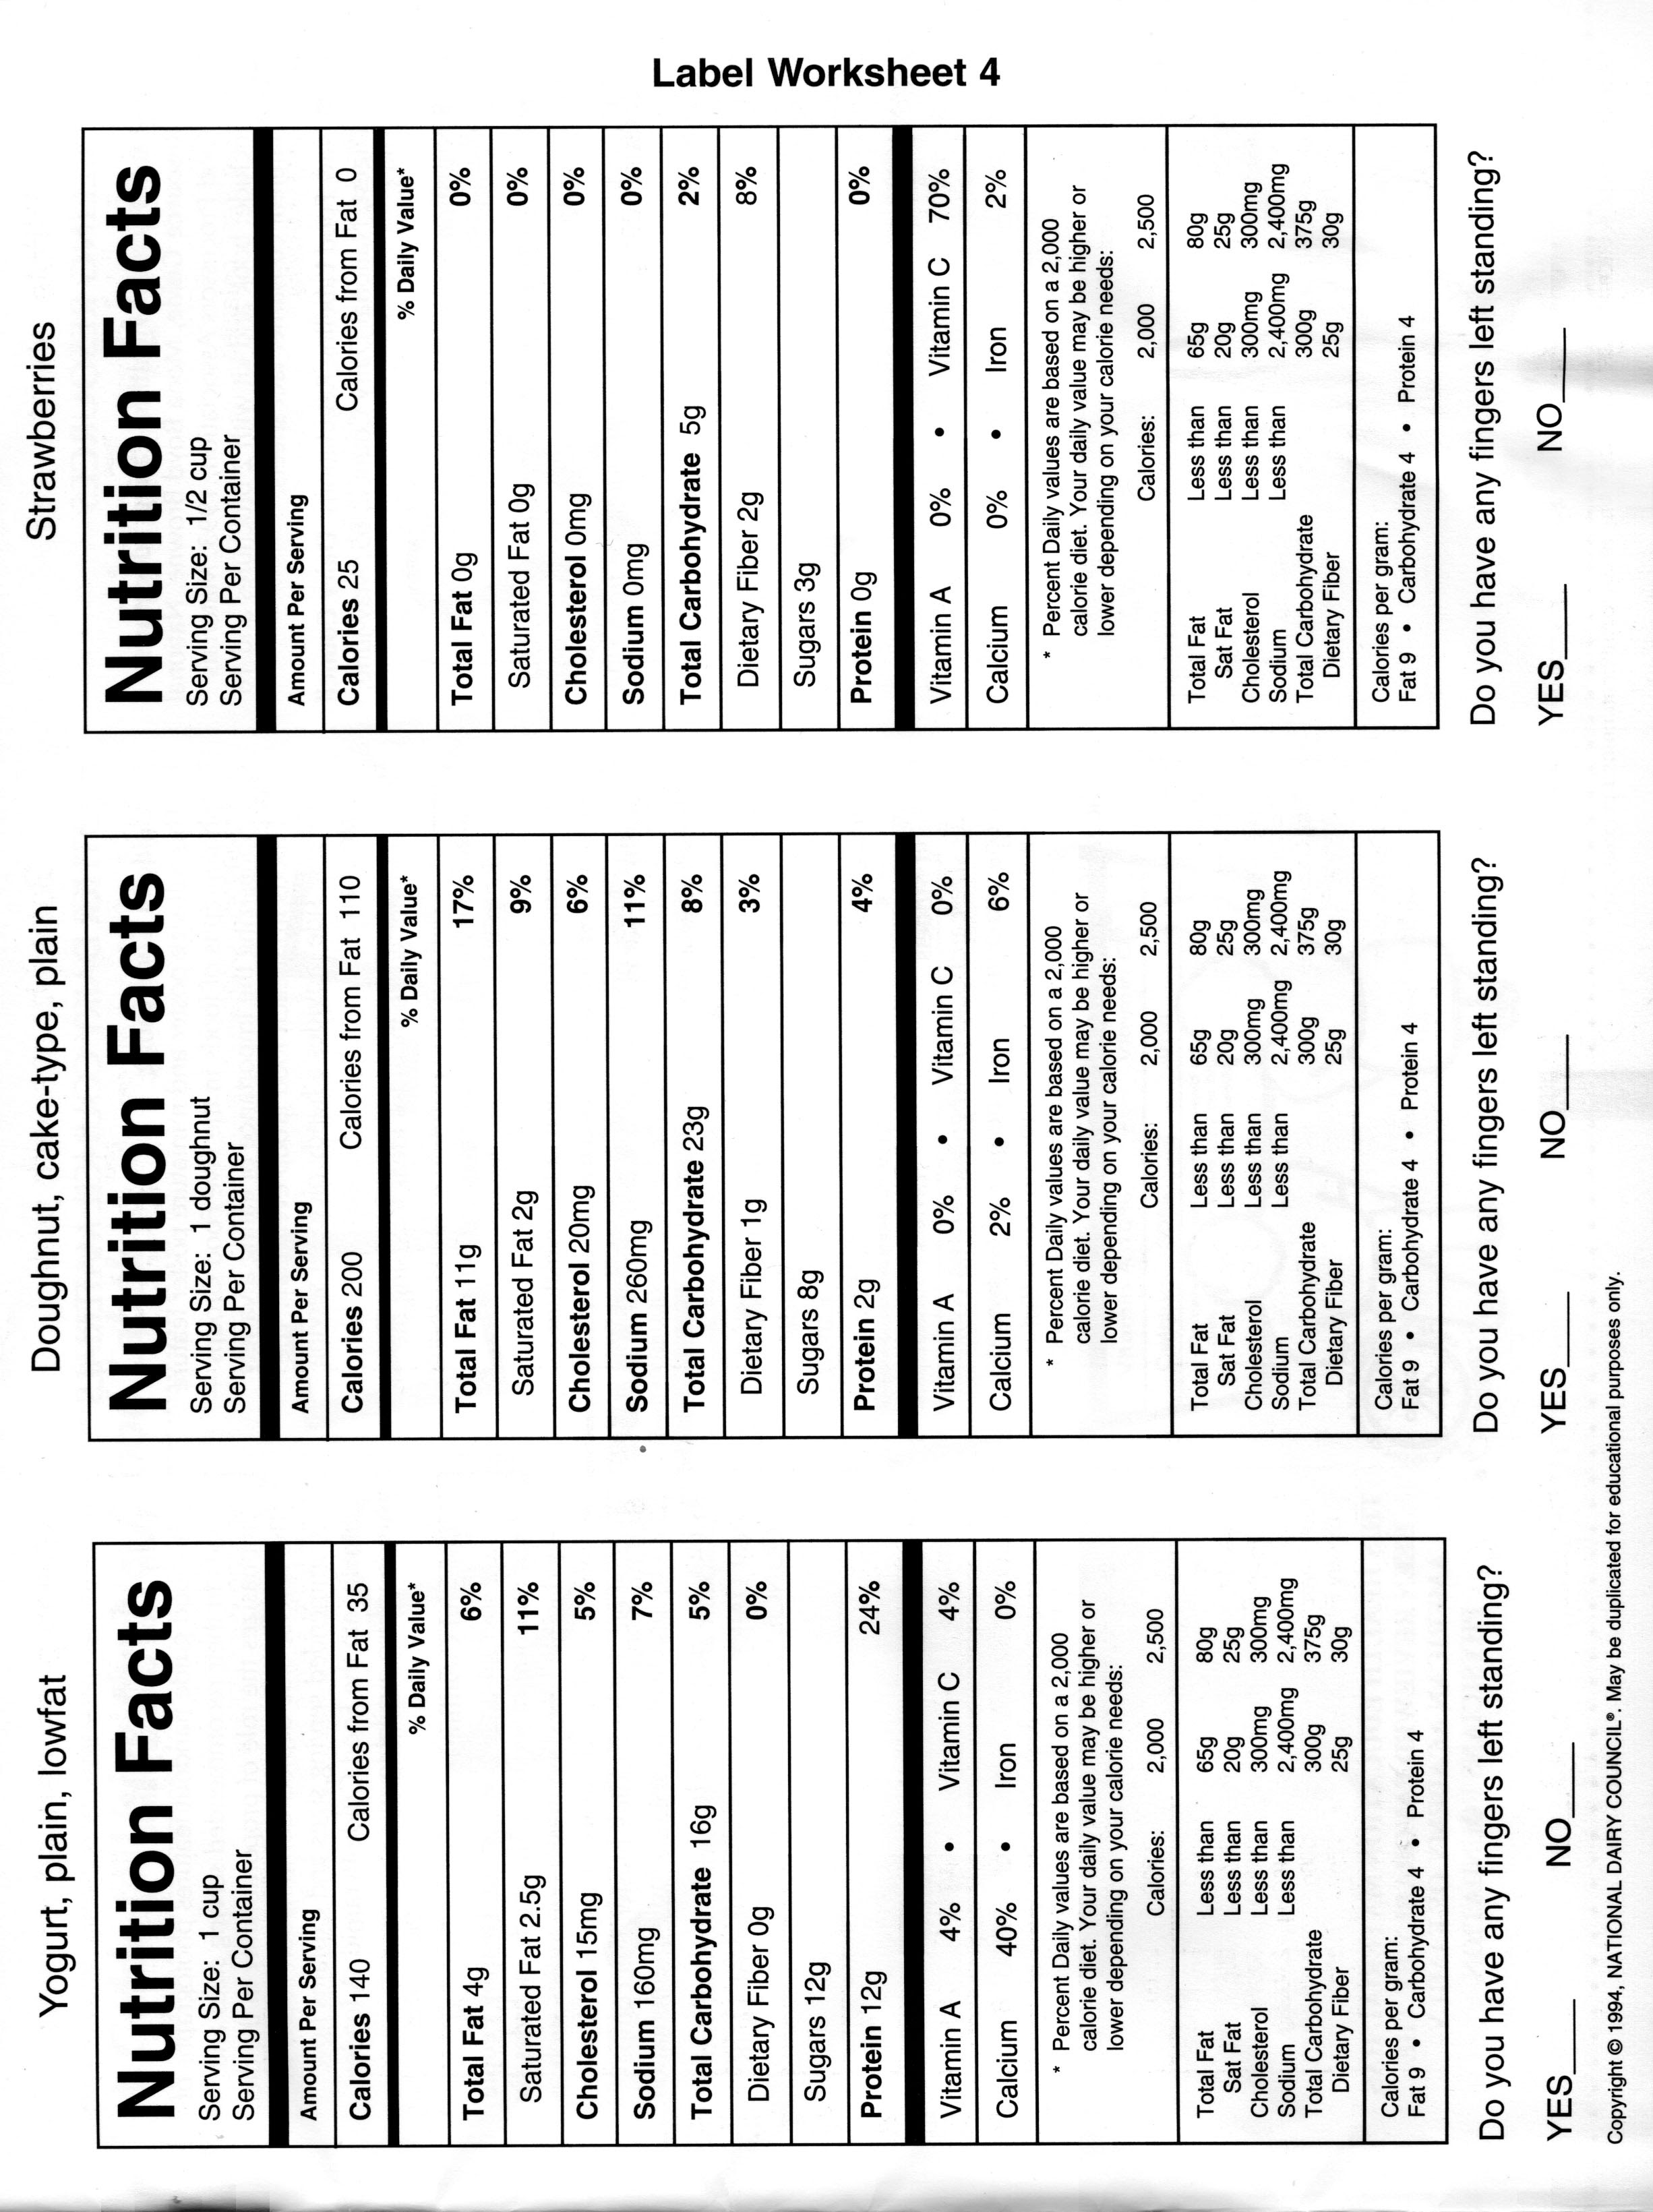 23 Blank Food Label Worksheet - Label Design Ideas 23 Within Blank Nutrition Label Worksheet